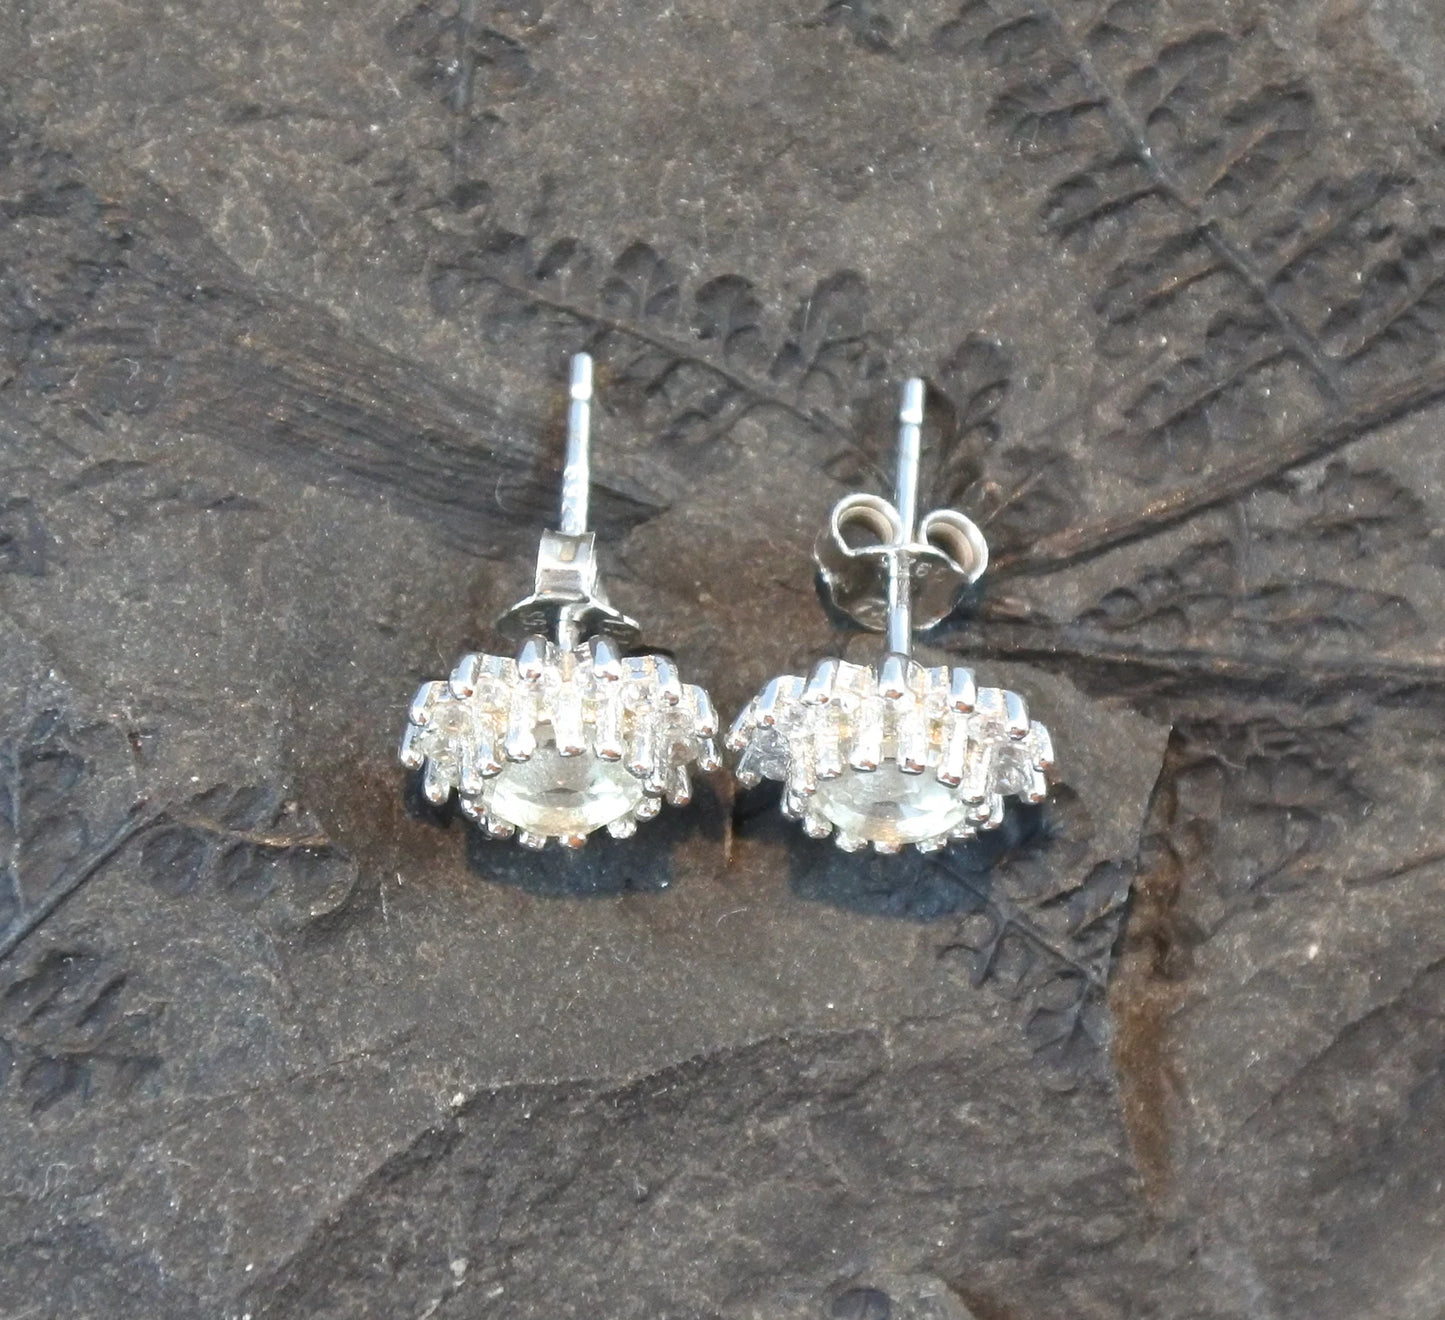 Libyan Desert Glass Stud Earrings Sterling Silver jewelry tektite Libyan Glass, genuine Impact Glass celestial earrings